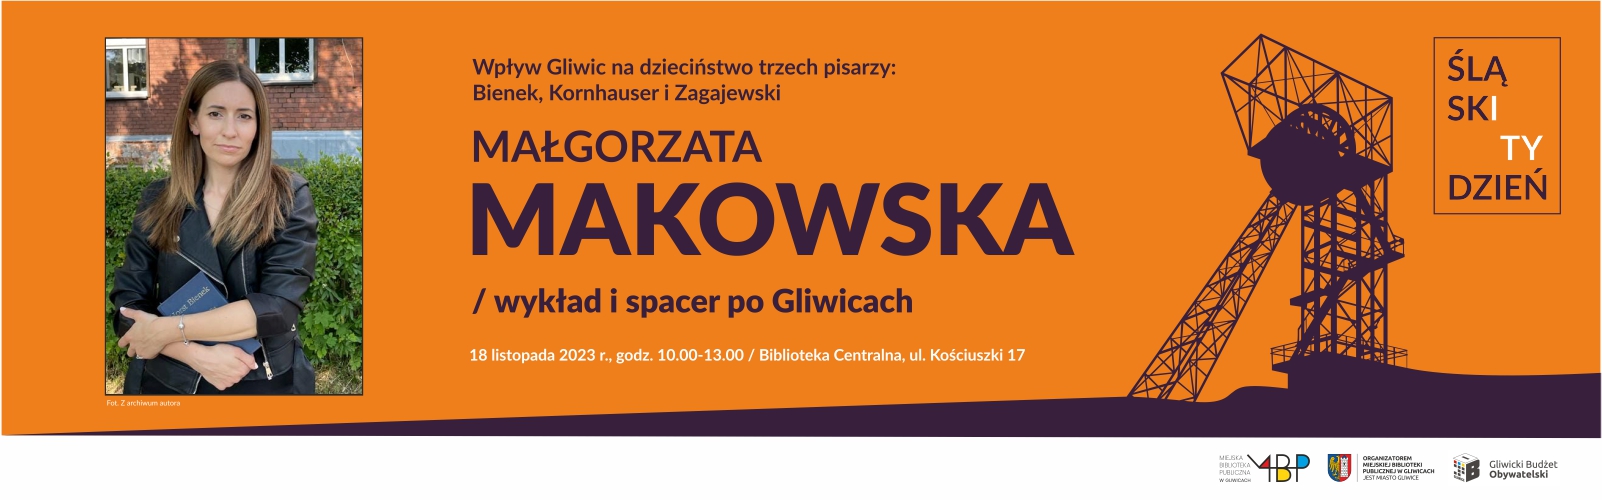 Baner z informacją o wykładzie i spacerze po Gliwicach w ramach Śląskiego Tygodnia